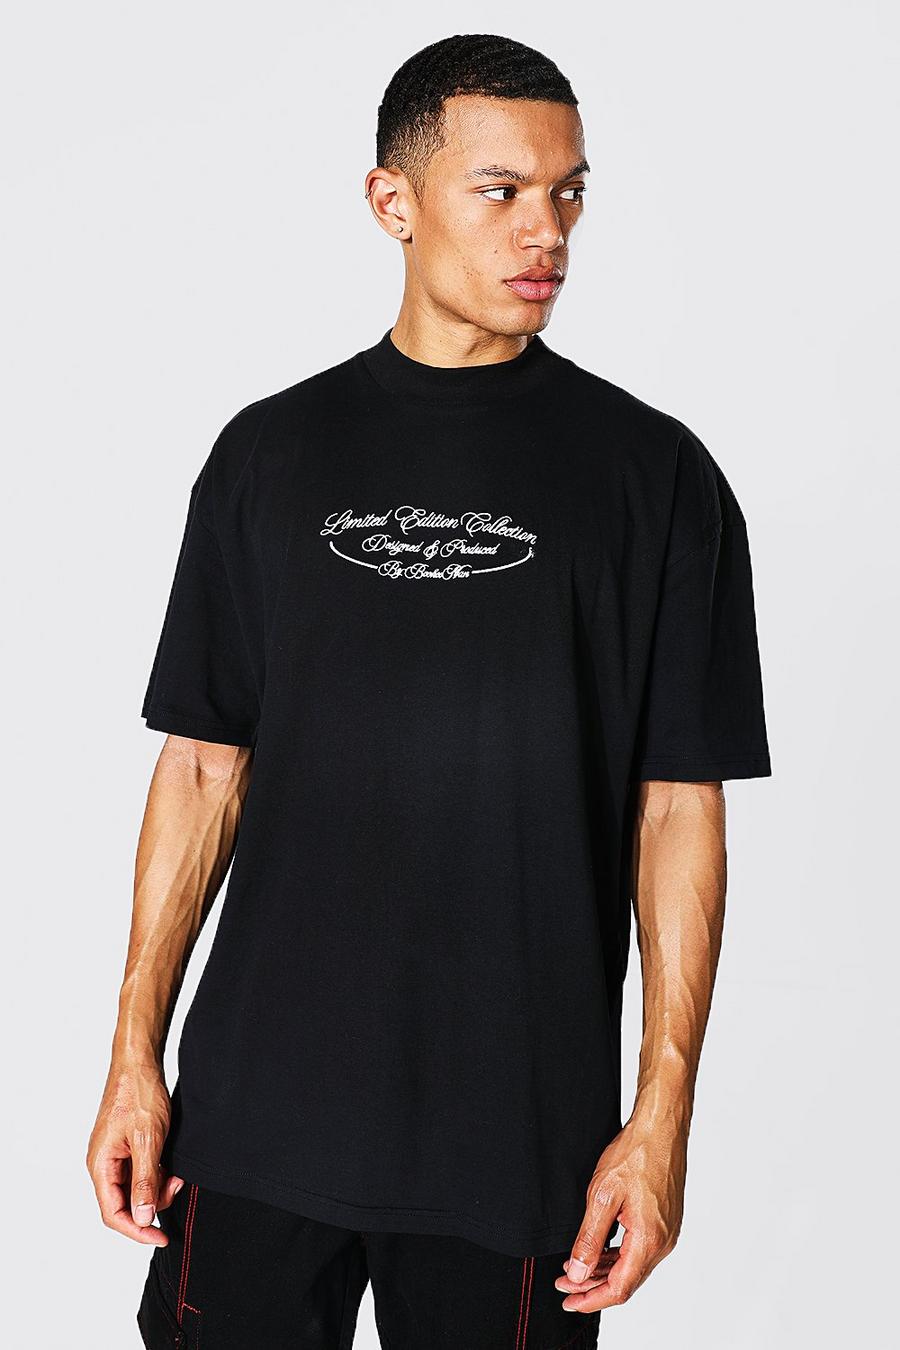 Camiseta Tall con estampado Limited en la espalda, Black negro image number 1